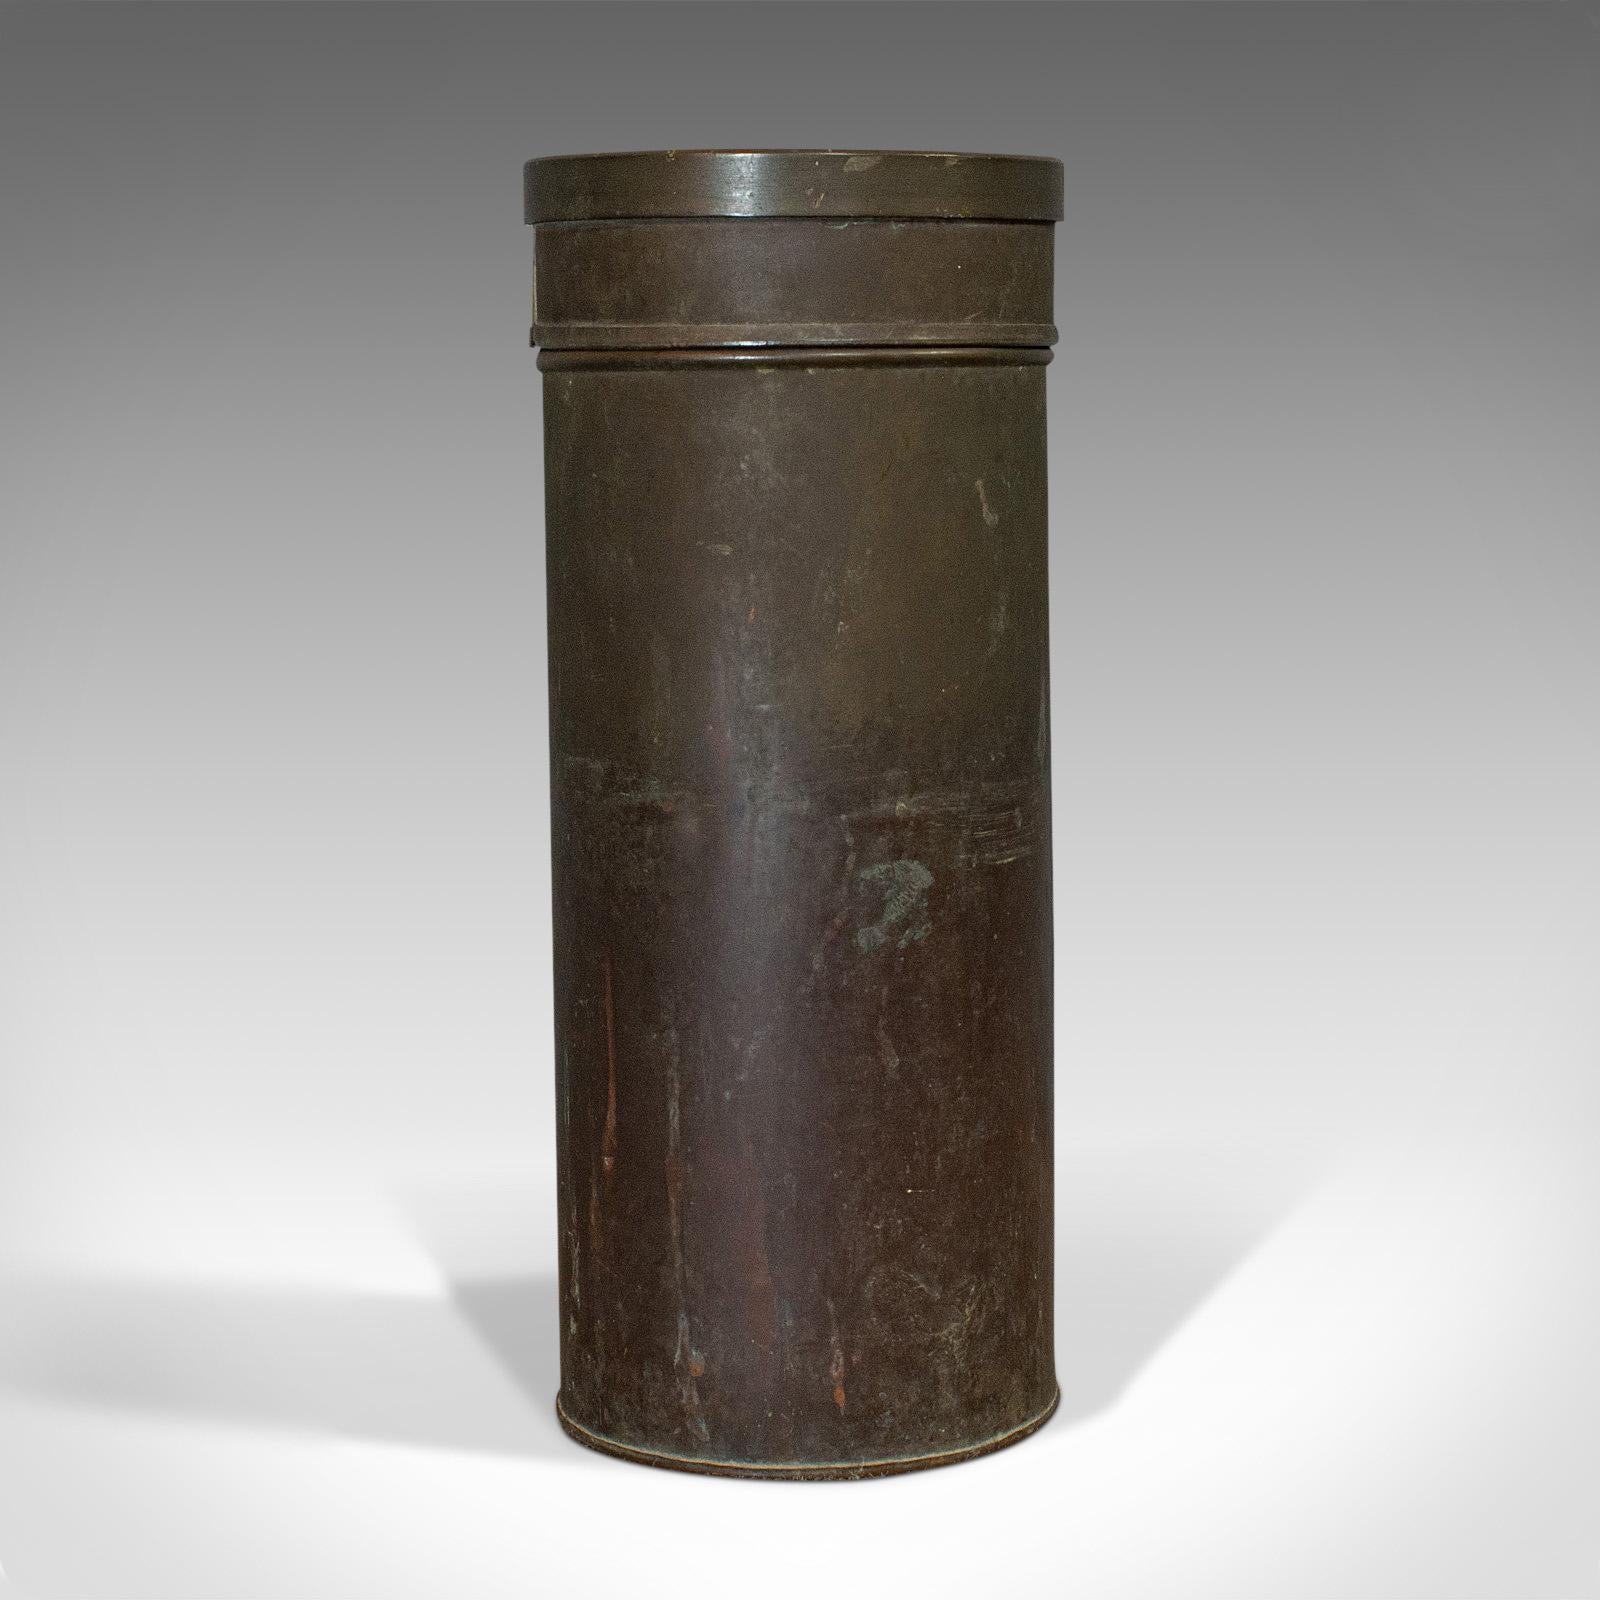 Il s'agit d'un pluviomètre ancien. Un udomètre, ombromètre ou pluviomètre anglais en cuivre, datant du début de la période victorienne, vers 1850.

Fascinant instrument de mesure victorien
Présente une patine vieillie très recherchée.
Le cuivre